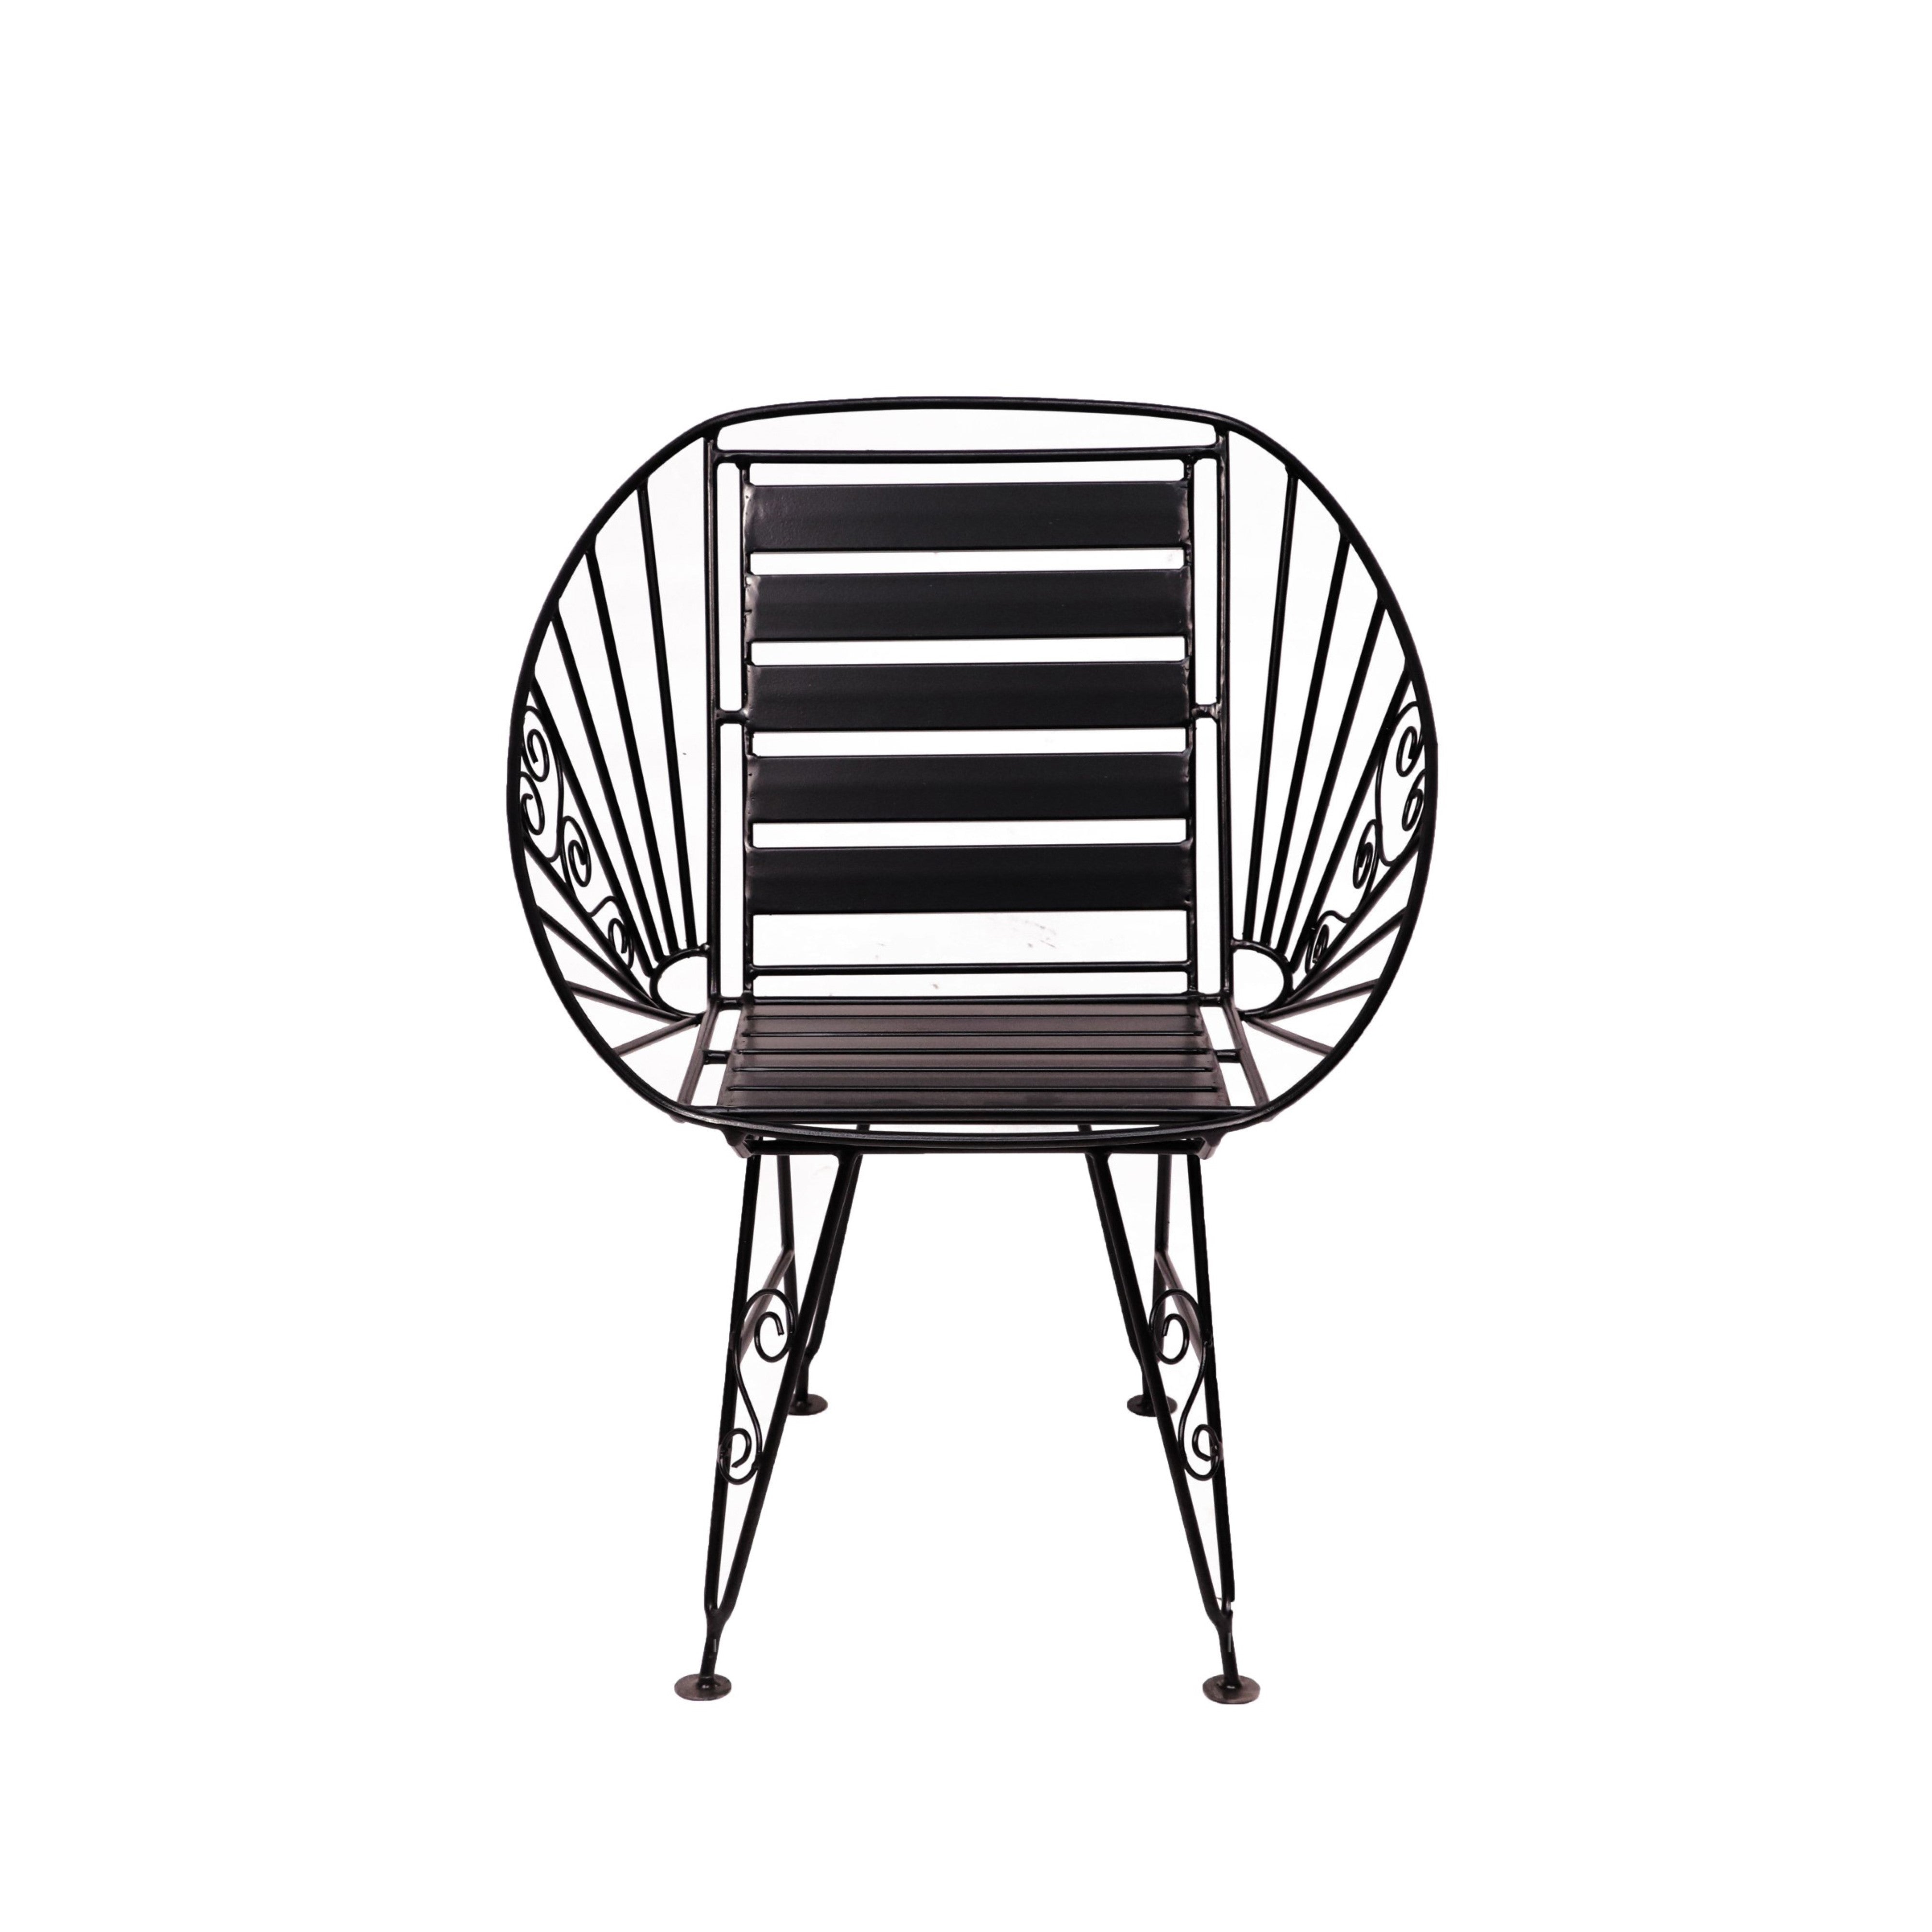 Metallic Arm GARDEN CHAIR Arm Chair